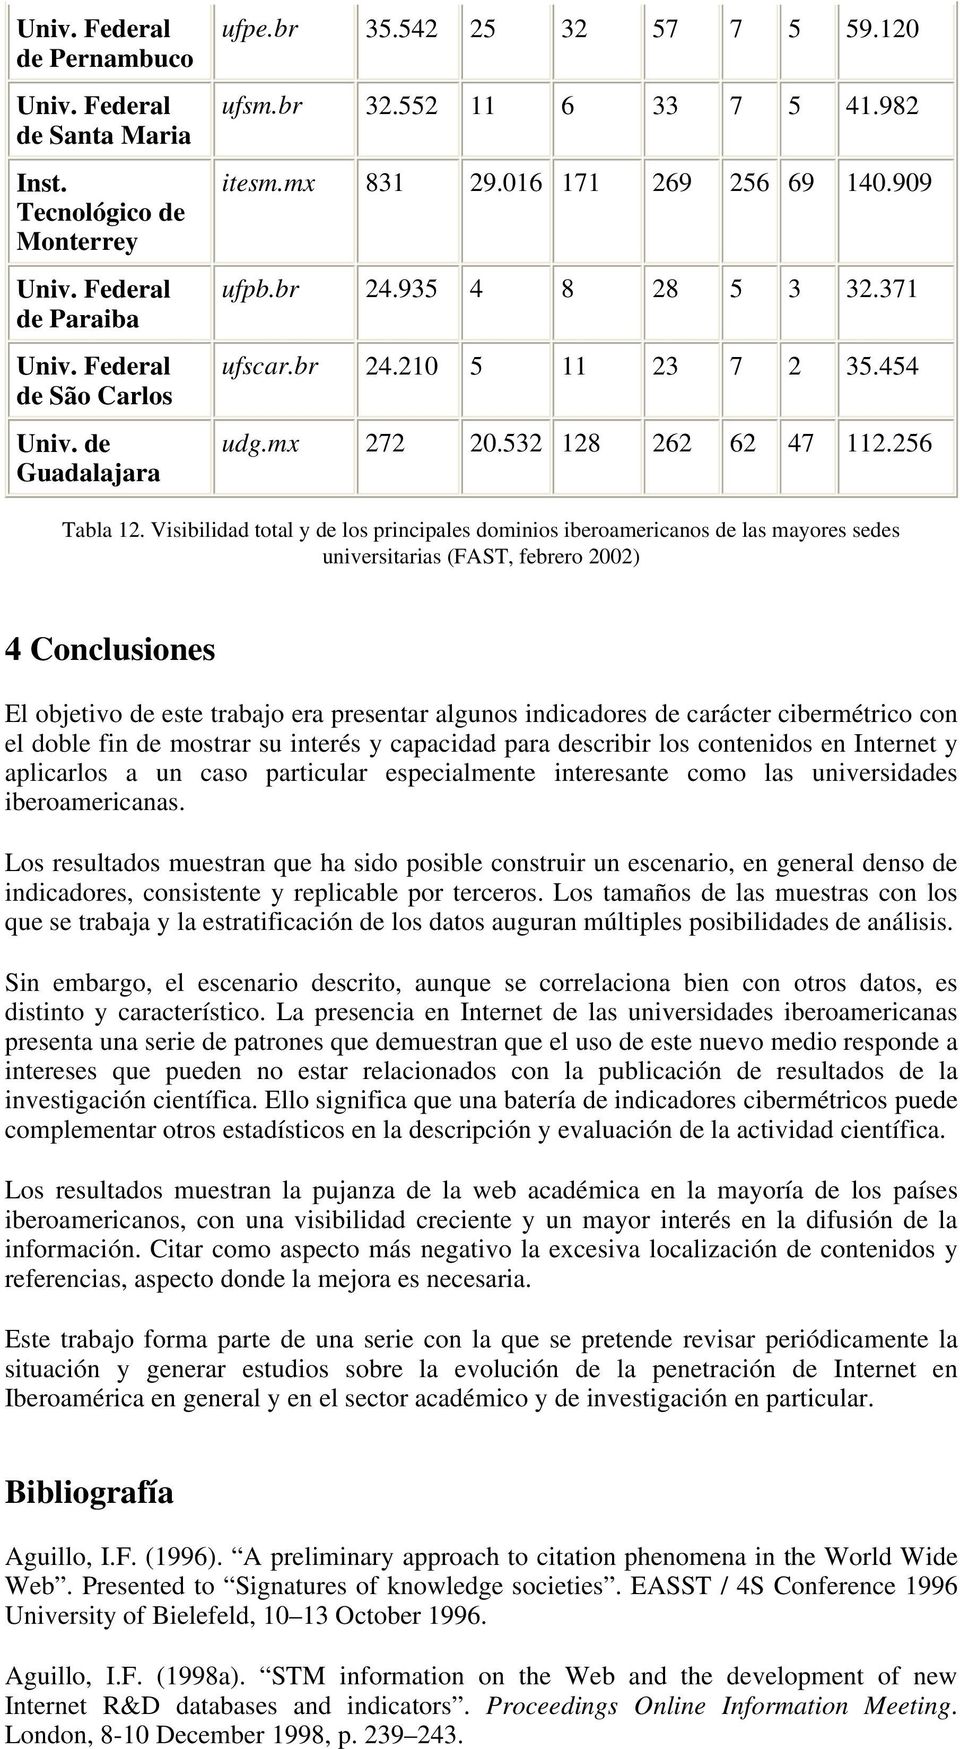 Visibilidad total y de los principales dominios iberoamericanos de las mayores sedes universitarias (FAST, febrero 2002) 4 Conclusiones El objetivo de este trabajo era presentar algunos indicadores